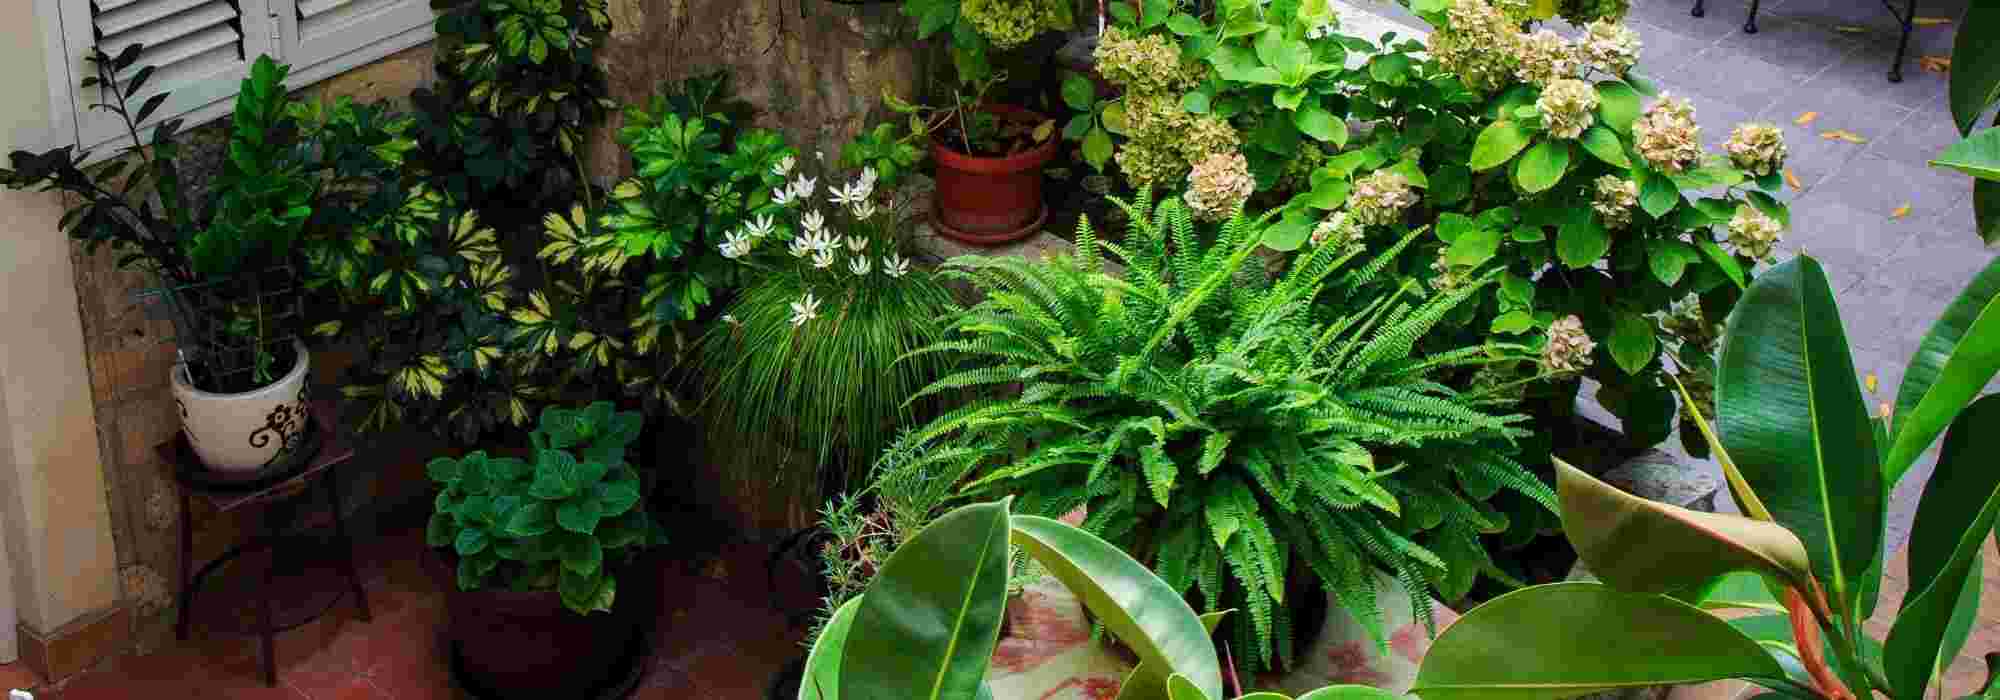 Brasero de jardin : quels avantages ? - Blog Le Pin Parasol